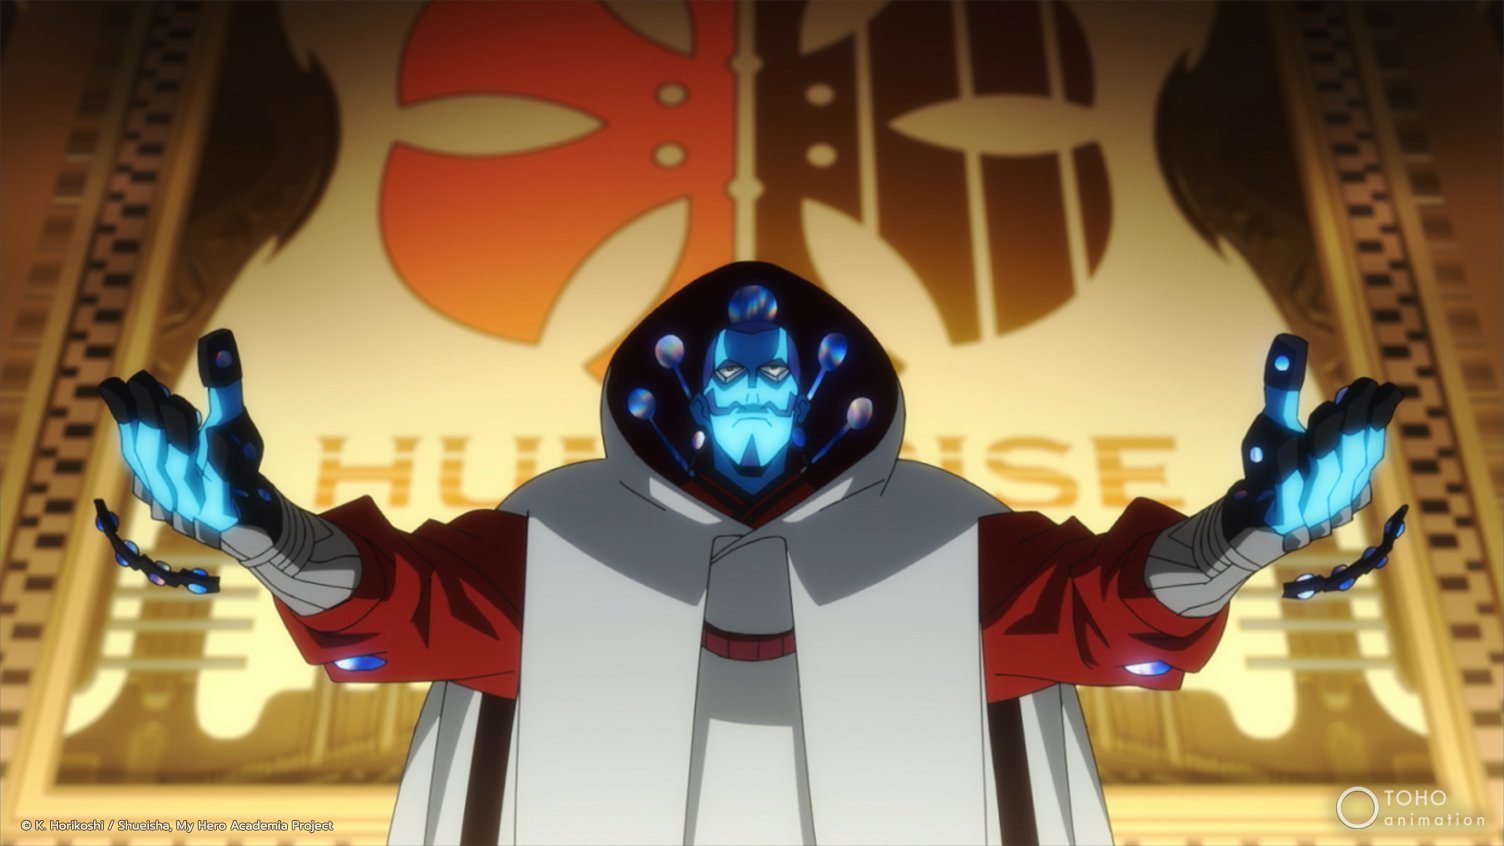 My Hero Academia - Missão Mundial De Herois Trailer Dublado Anime